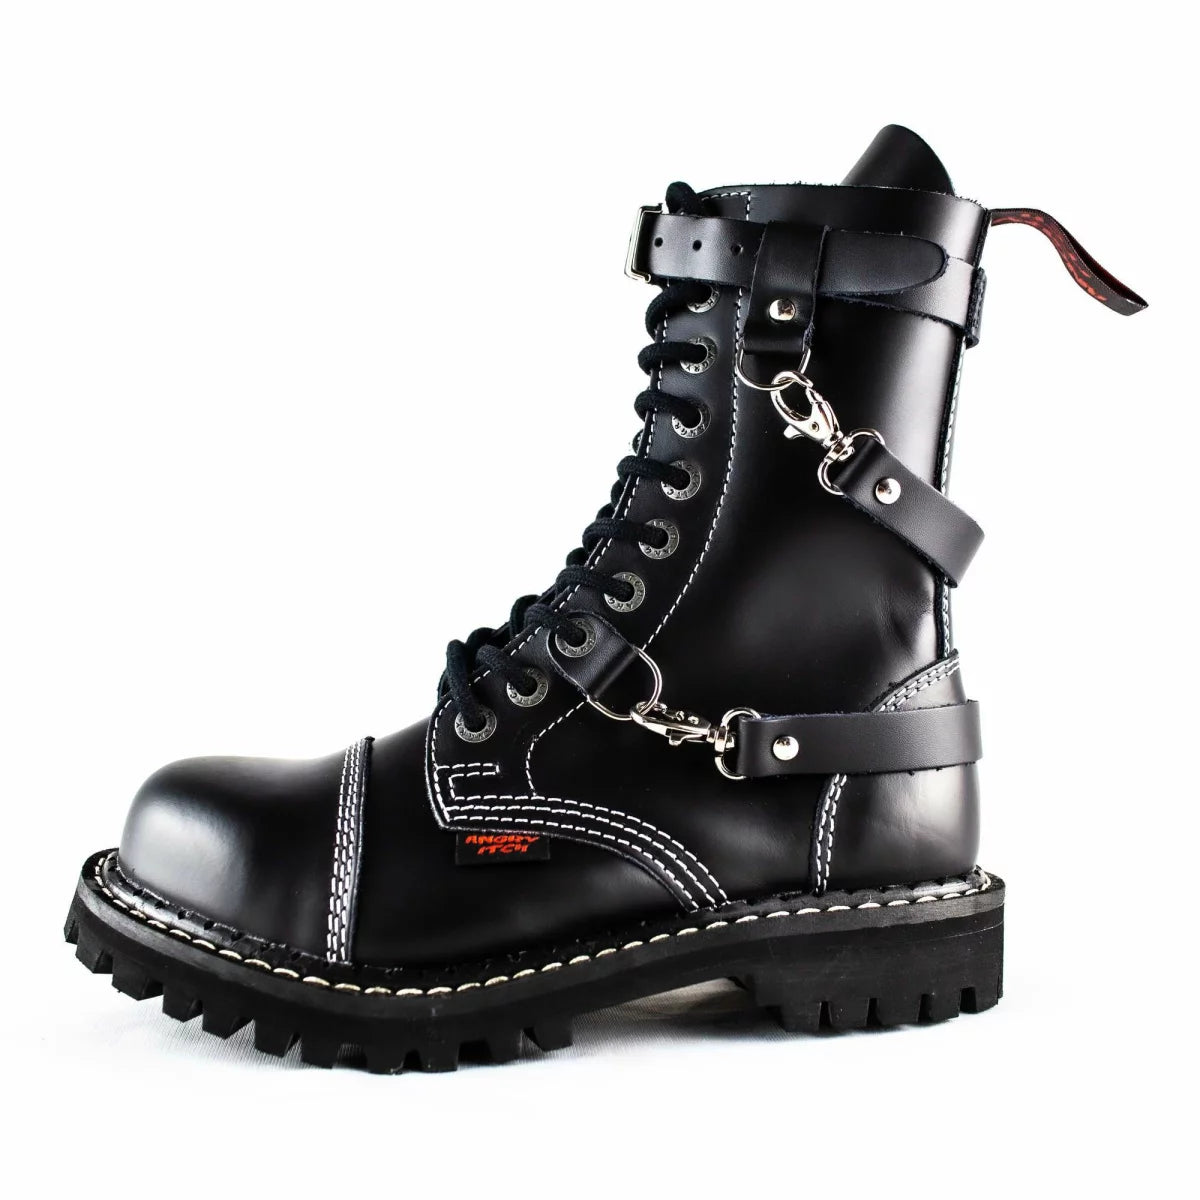 Seitenansicht: Schwarzer 10-Loch-Stiefel aus Leder mit drei Riemen um den Schuh